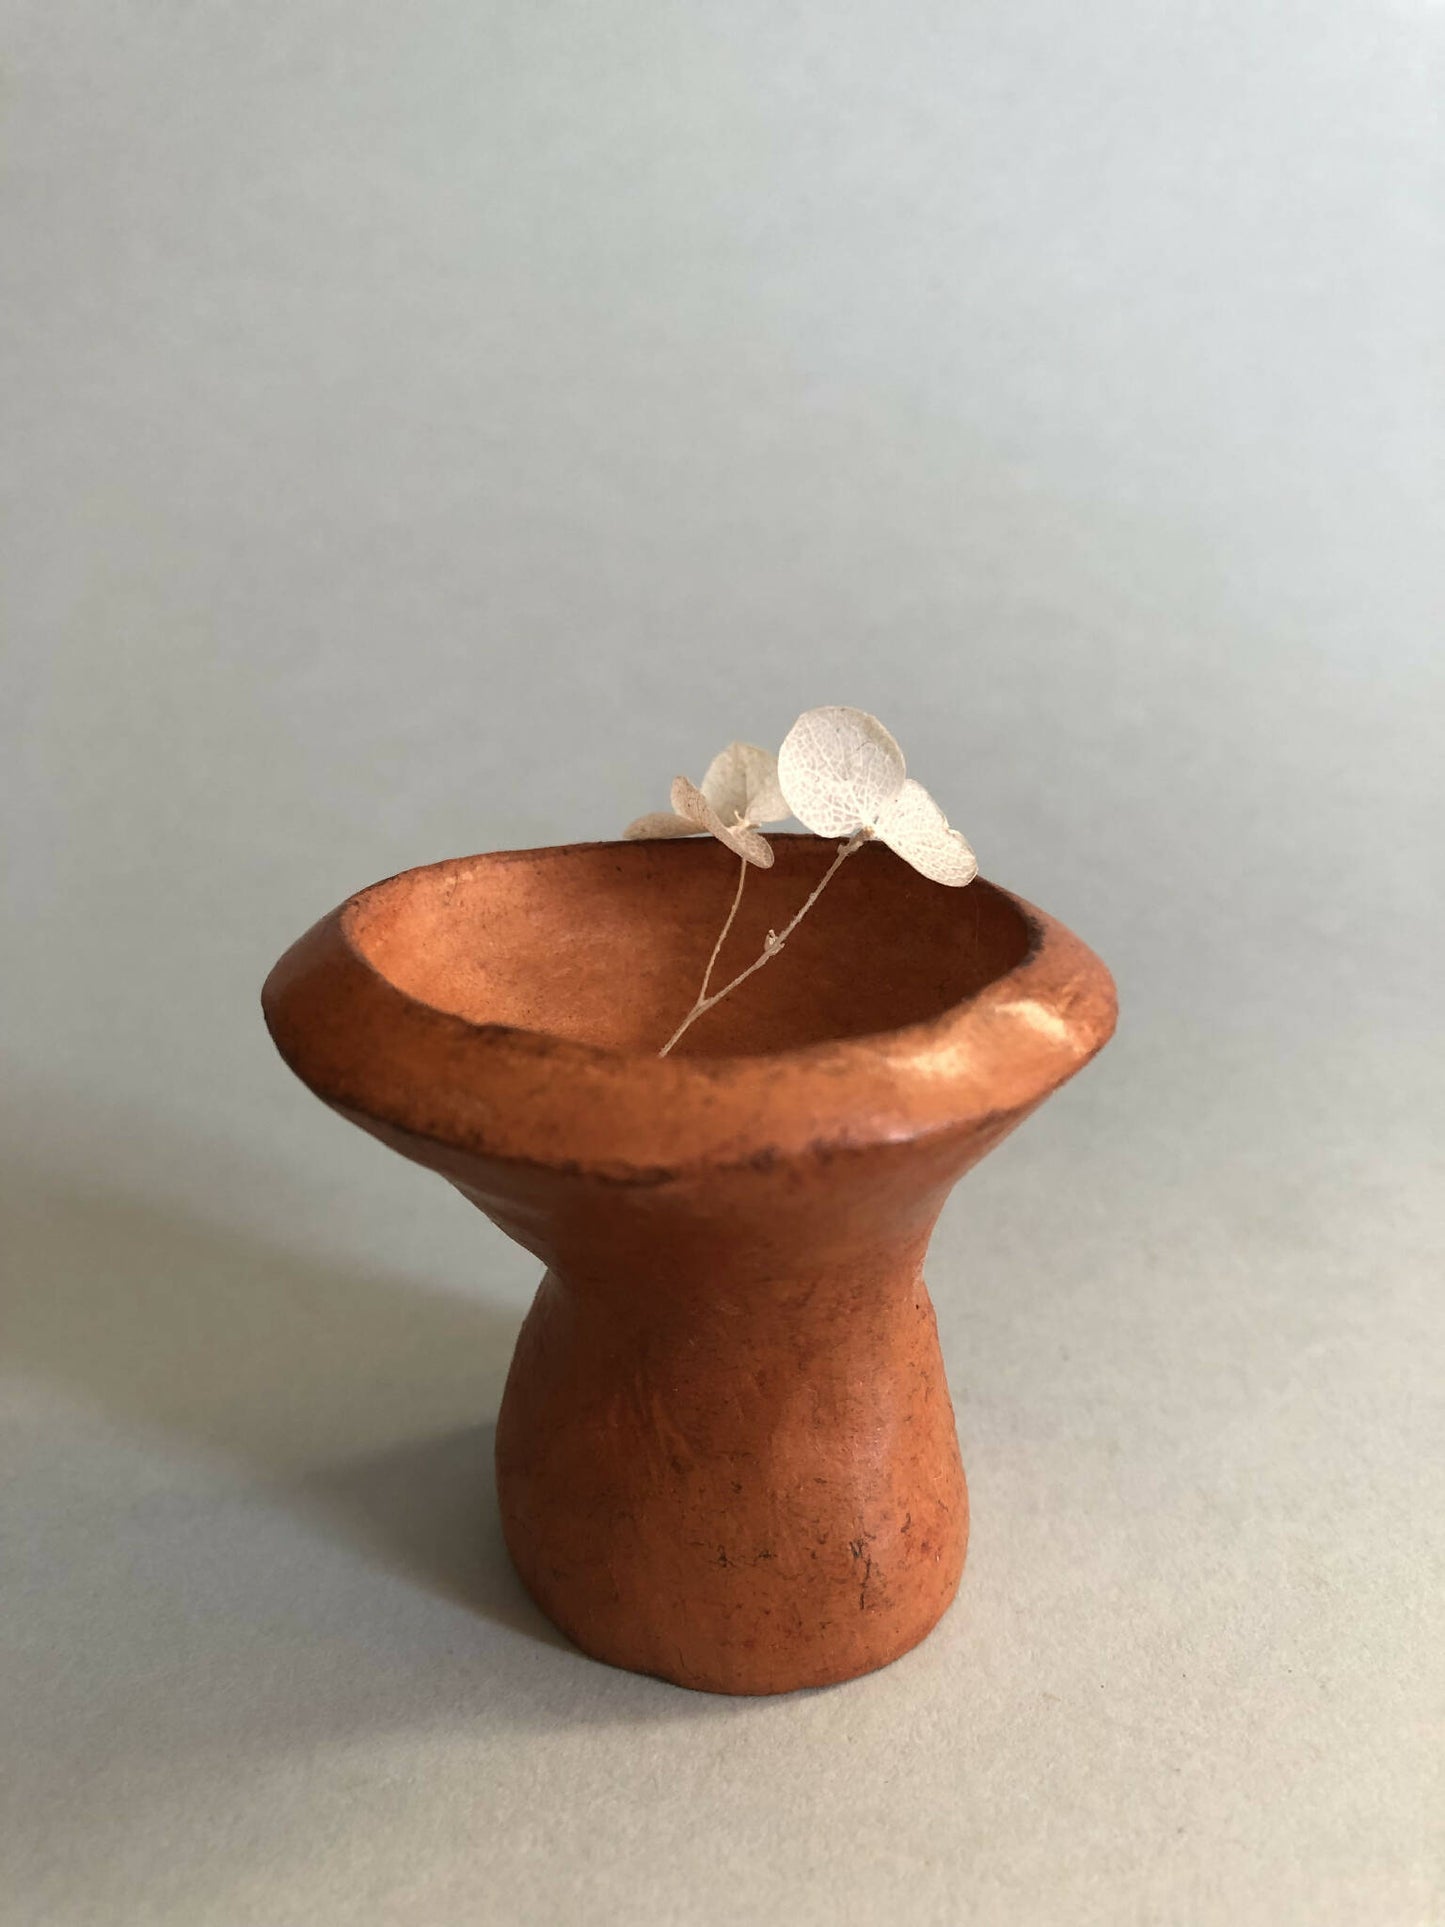 pot argile ceramique artisanal fait main